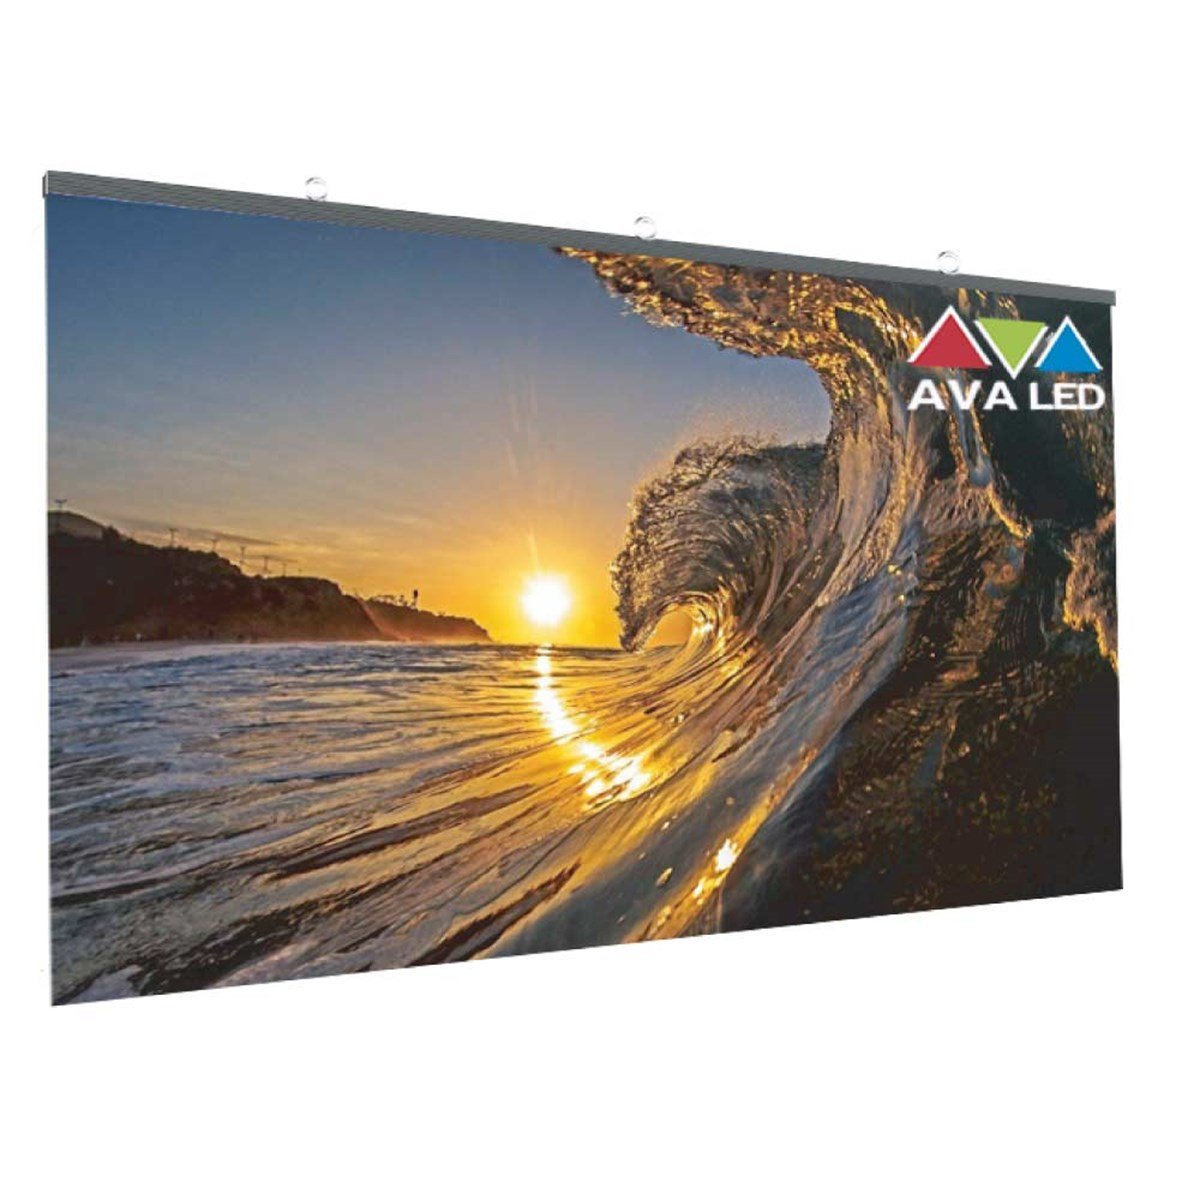 AVA LED TN-OF-4 Pro , High Brightness Outdoor Led Screen